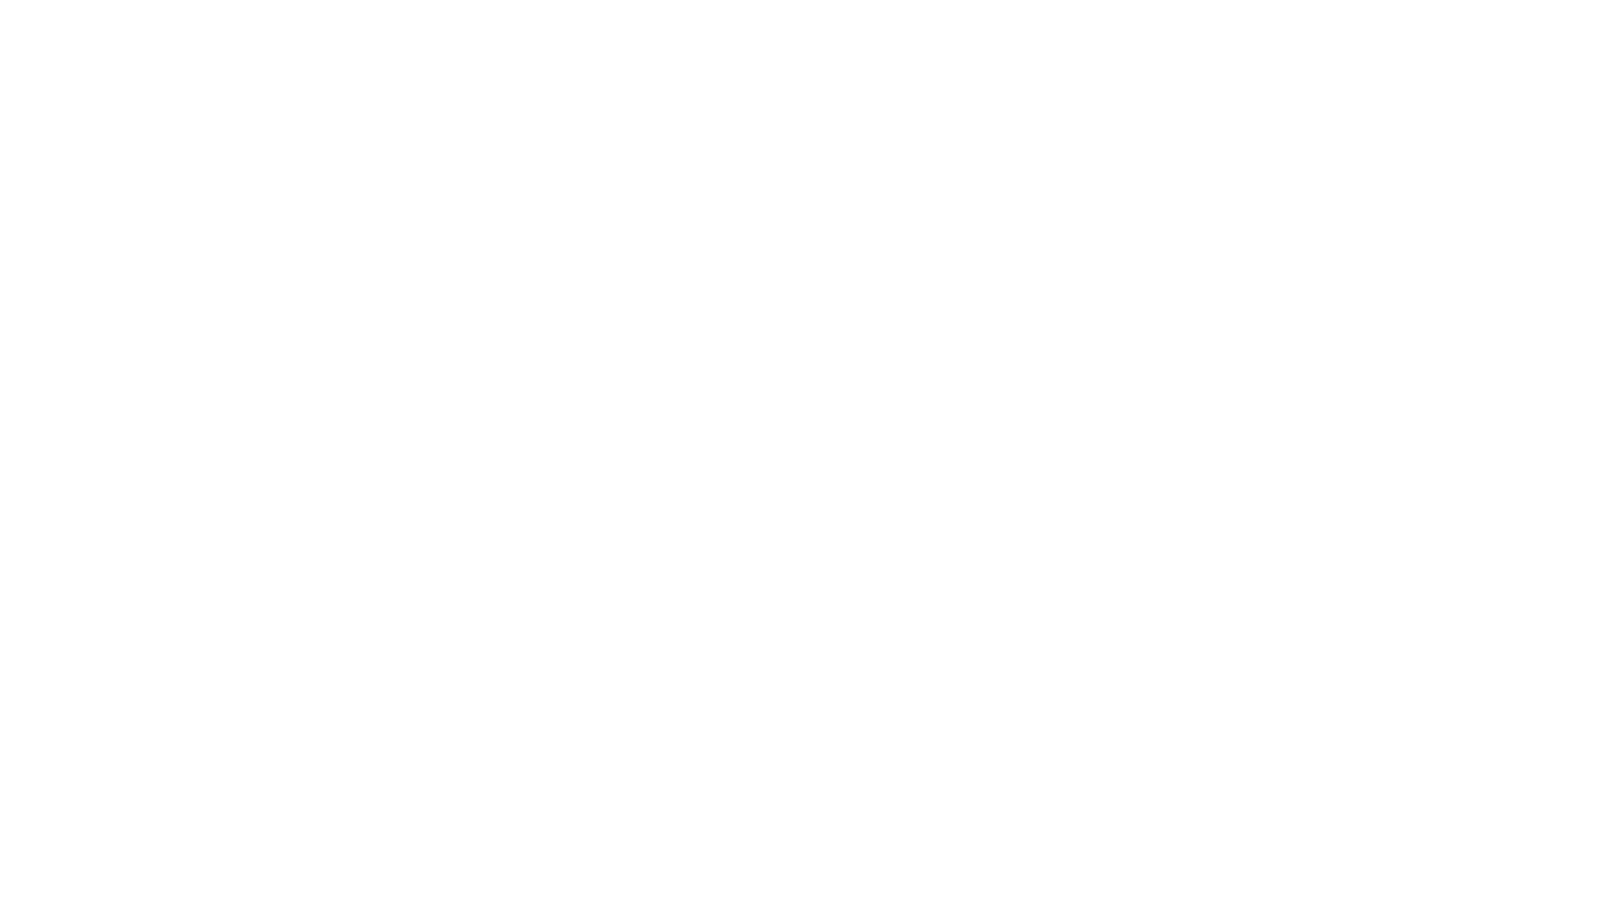 KVANN og «Finnskogmat» i regi av Finnskogen Natur & Kulturpark arrangerer fagdag om historiske kålvekster og andre matplanter med dyrkningshistorie fra Finnskogen.
Her kan du høre om Merete Furuberg, prosjektleder for «Finnskogmat» og styremedlem i KVANN, fortelle om “Finnskogmat og skogfinsk svedjenepe, via Stephen Barstow til styret i KVANN”.

Den viktigste kålveksten i den skogfinske mattradisjonen, svedjenepa (en sort fra det skogfinske området på Finnskogen i Sverige og Norge), er utrydningstruet. Nå kan vi være med og redde denne viktige veksten for vår autentiske mattradisjon!

Andrew McMillion, styremedlem i kvann og eier av McMillion`s plants www.mcmillion.no, kommer for å snakke om Dyrking og frøsparing av «gammeldagse» kålvekster  – deriblant svedjenepe.

KVANN - Kunnskap og Vern av Nytteplanter i Norge / Norwegian Seed Savers

To assure the quality of our work, KVANN is organised through 37 PLANTELAUG and TEMALAUG